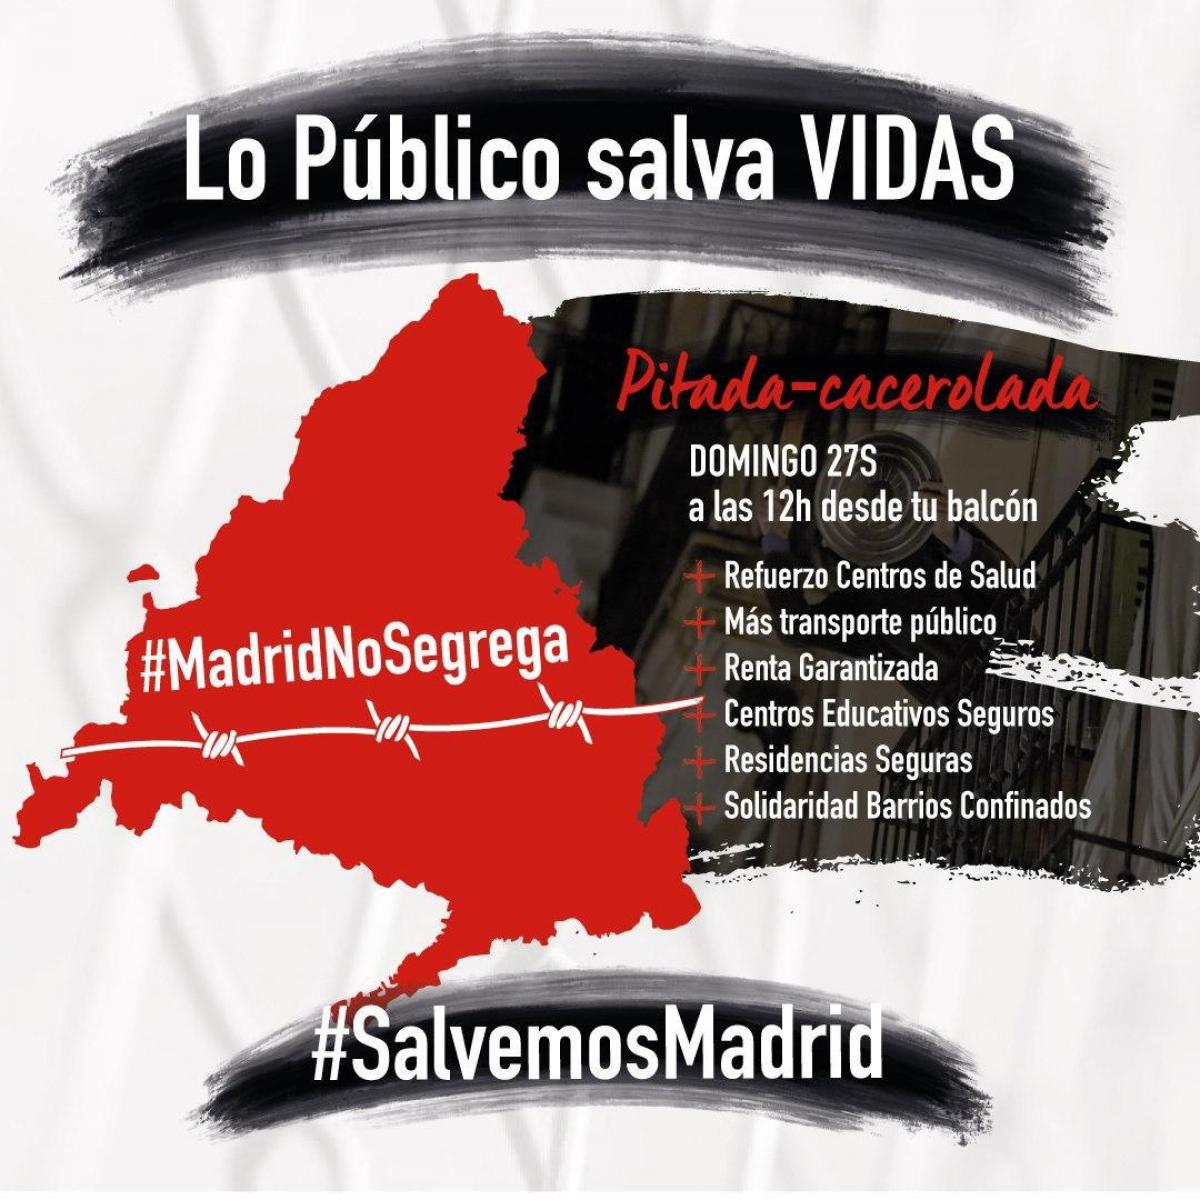 Lo Público salva vidas, Madrid no segrega